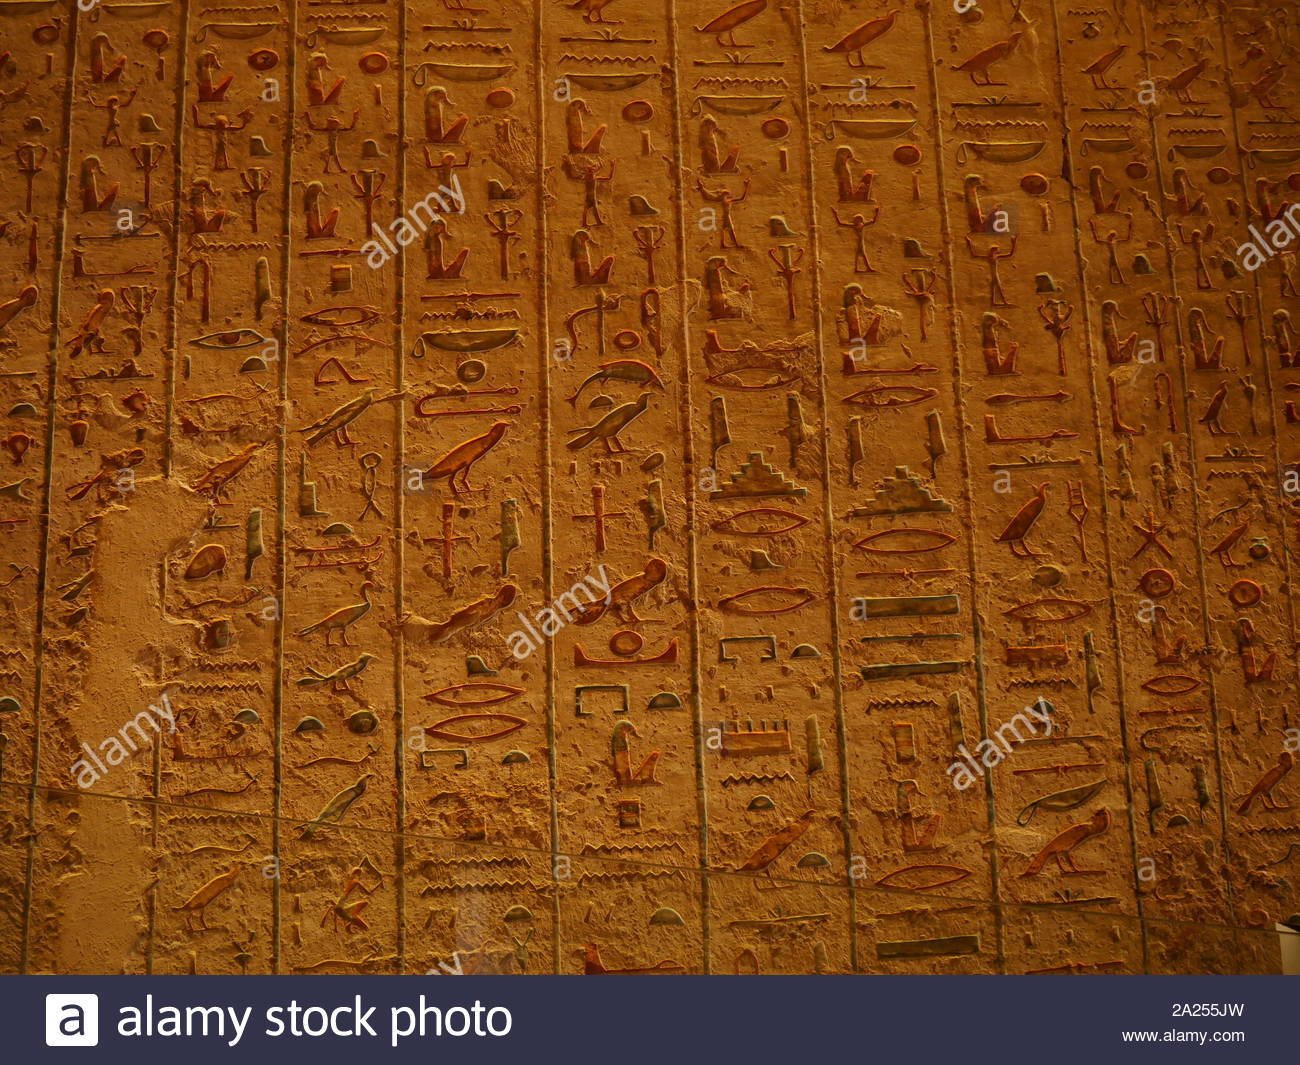 Tomba KV11 è la tomba di antico faraone egiziano Ramesse III, (1186-1155 BC), XX dinastia. Situato nella valle principale della Valle dei Re e la tomba era stata originariamente avviato da Setnakhte, ma abbandonato quando si ruppe in precedenza la tomba di Amenmesse (KV10). La tomba KV11 è stato ripreso e ampliato e su un asse diverso per Ramesse III. La tomba è stata aperta fin dall'antichità ed è stata variamente nota come Bruce la tomba (chiamato dopo James Bruce che ha immesso la tomba nel 1768) e la Harper's tomba (a causa di dipinti di due ciechi harpers nella tomba). Foto Stock